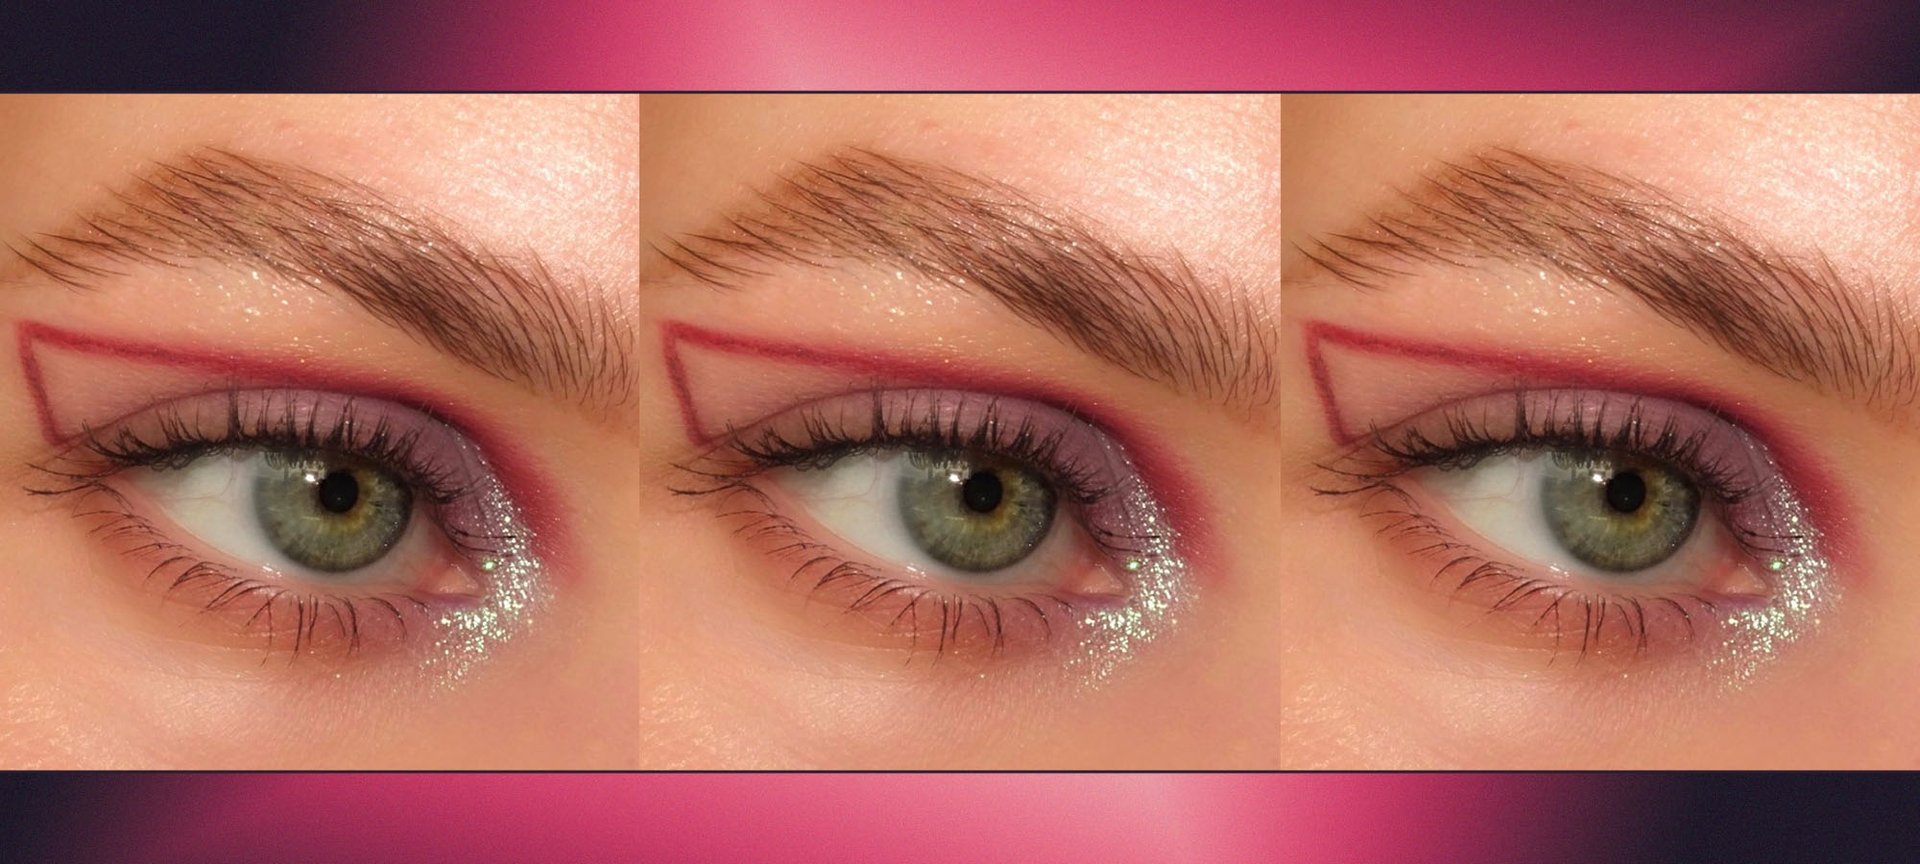 Beginner Eye Makeup For Hooded Eyes ~ 9 Pro Makeup Tips For Hooded Eyes ...